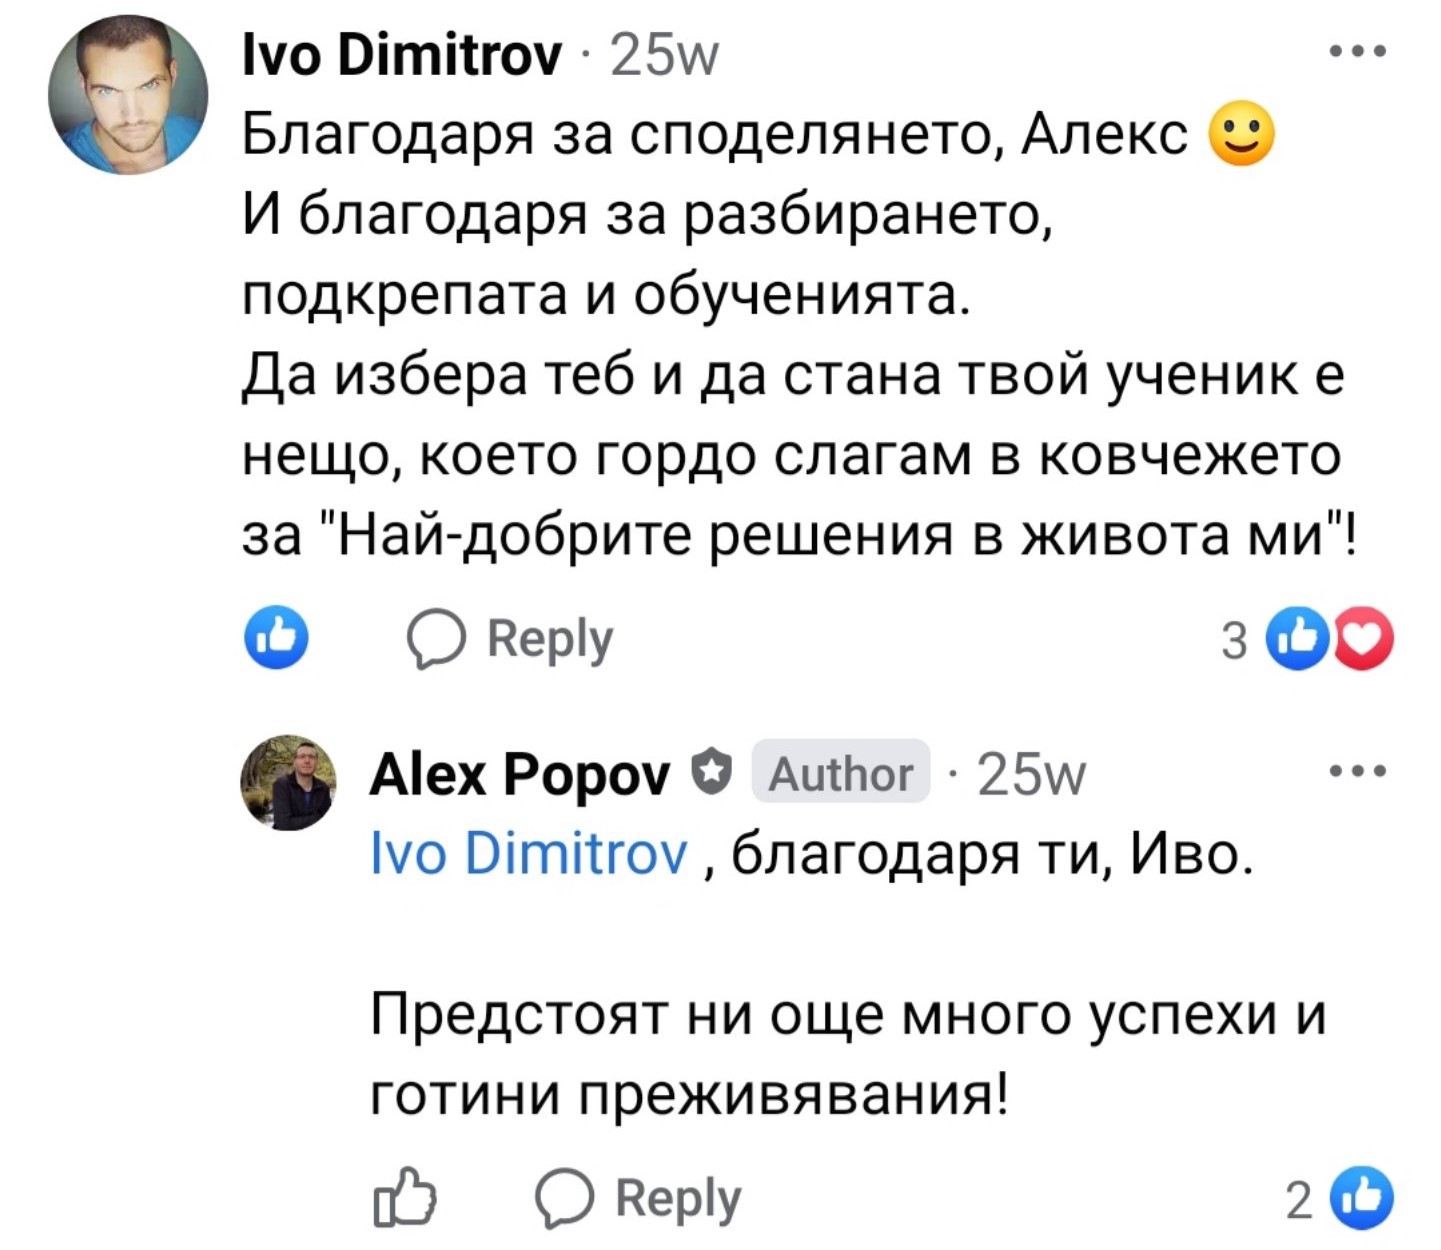 Ivo Dimitrov NLP about Alex Popov NLP